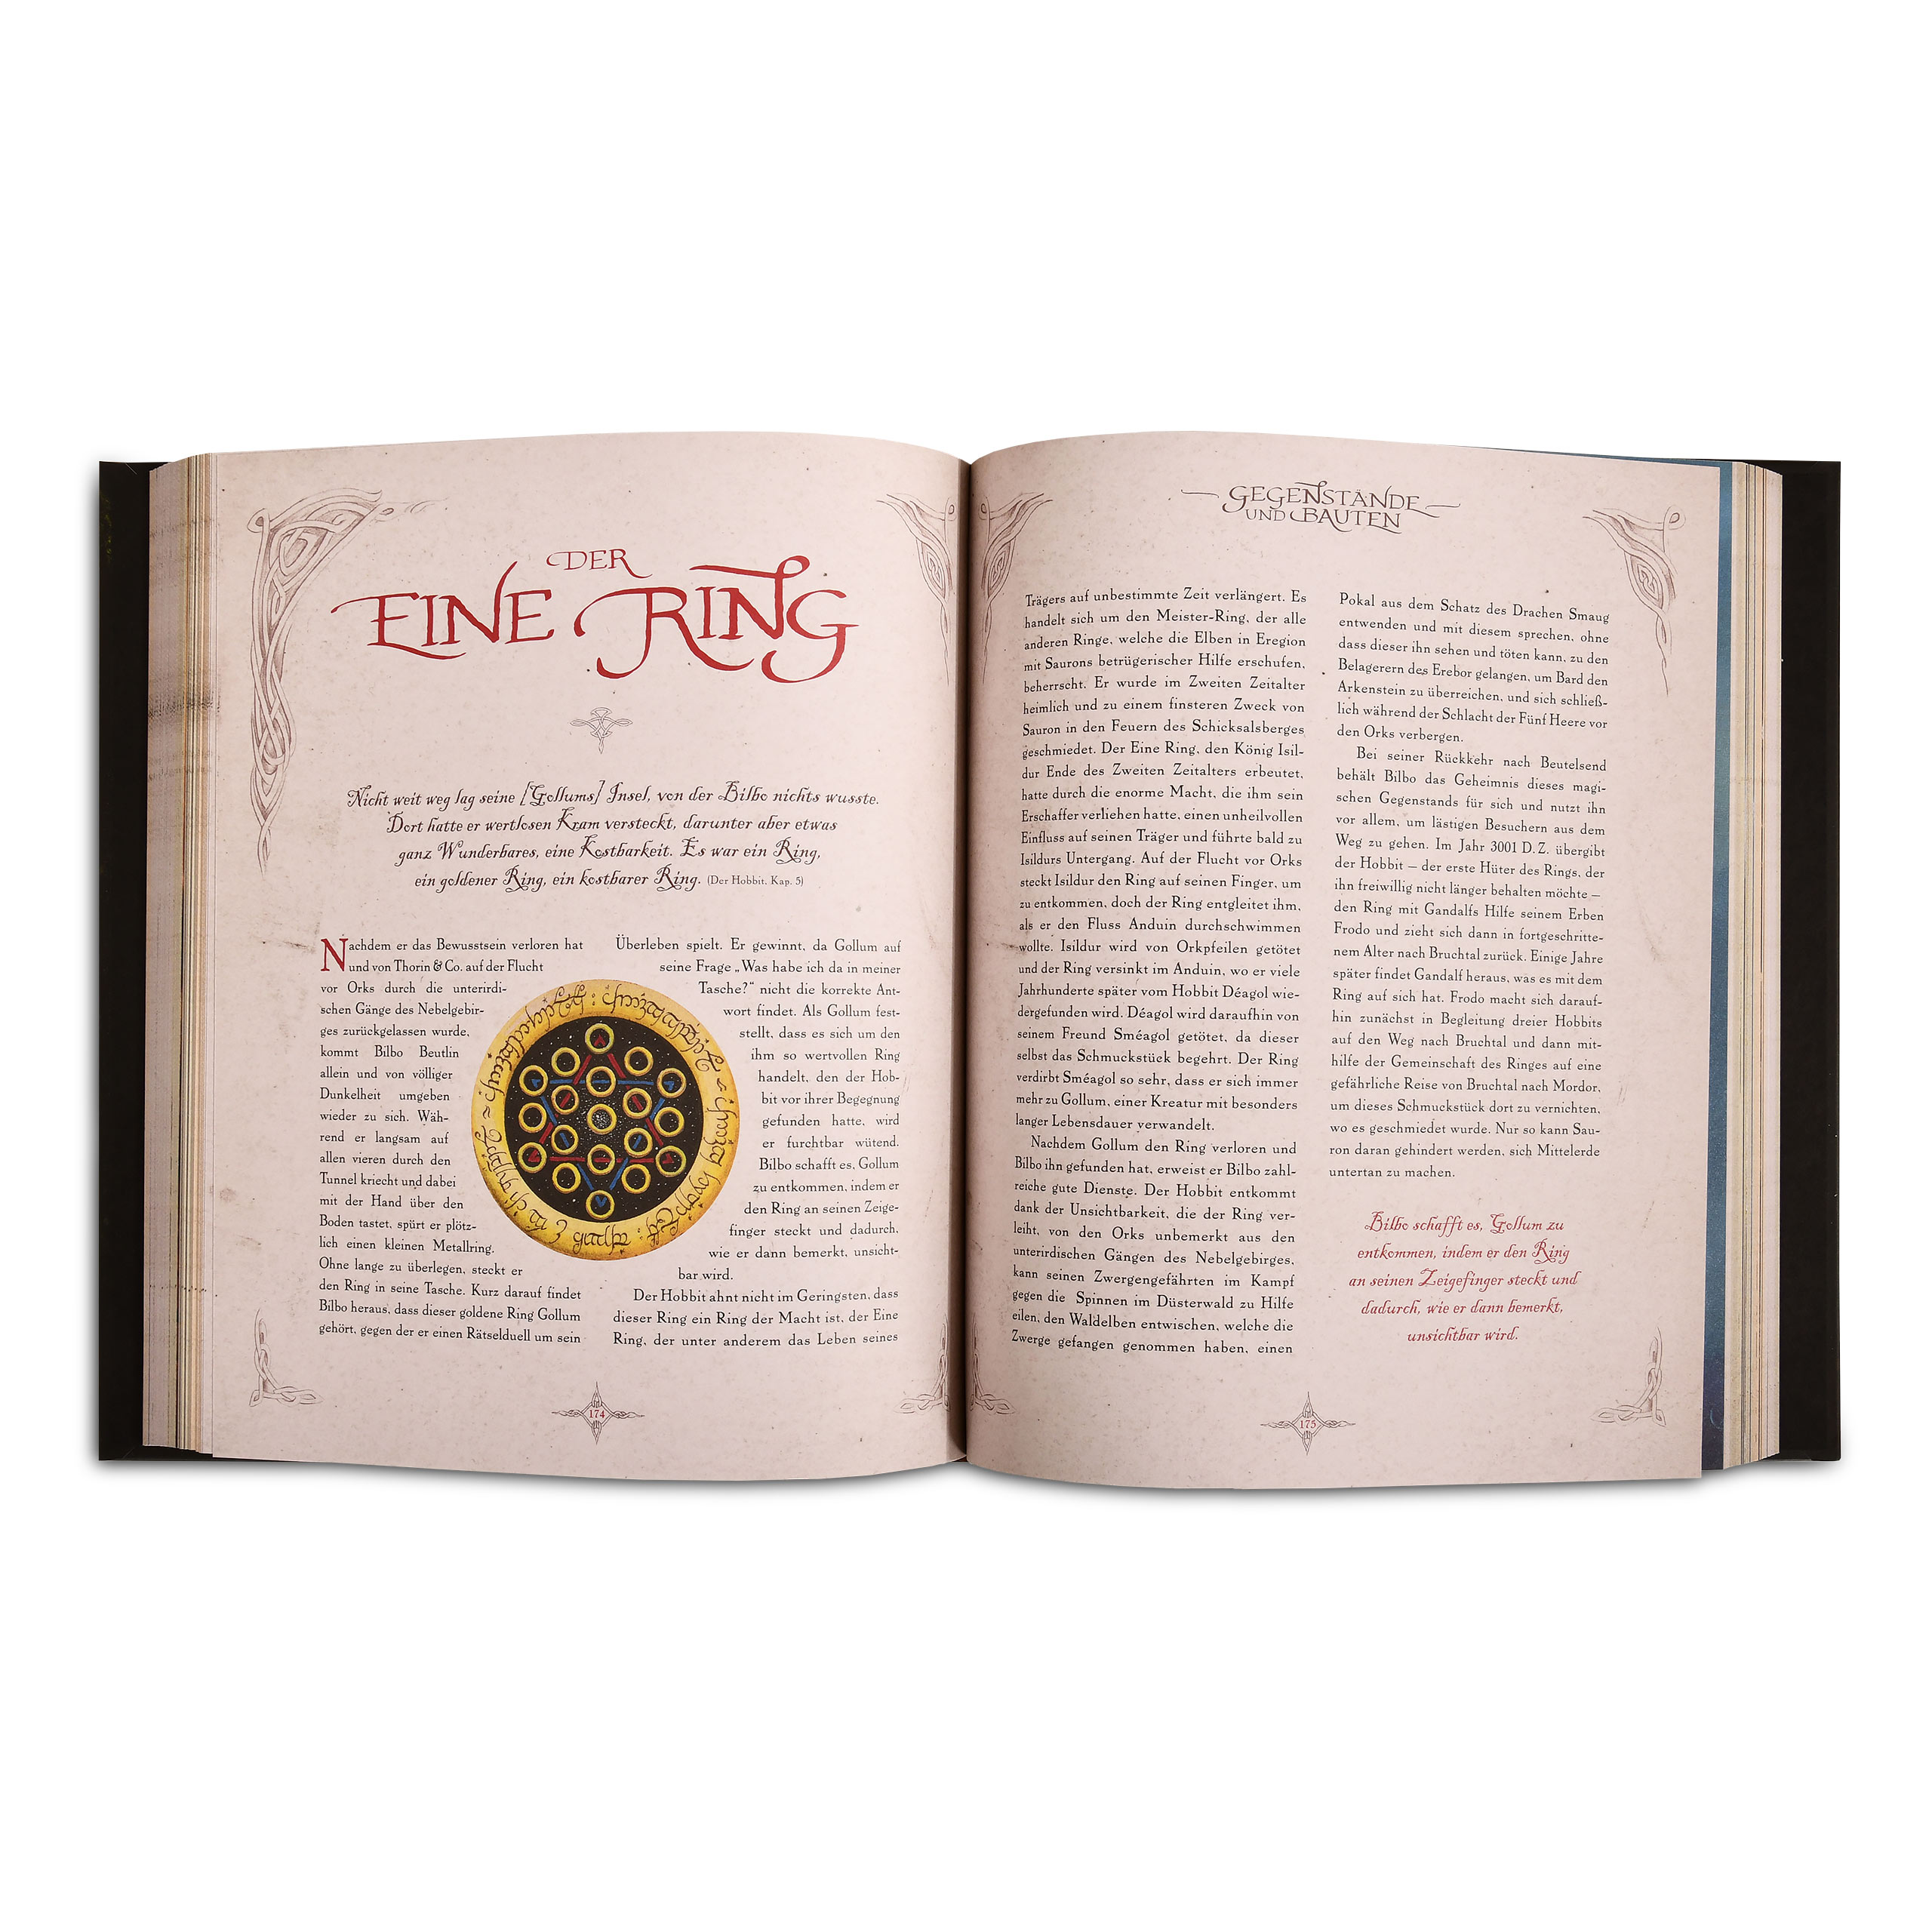 Tolkien's Legendarium - The Great Hobbit Encyclopedia